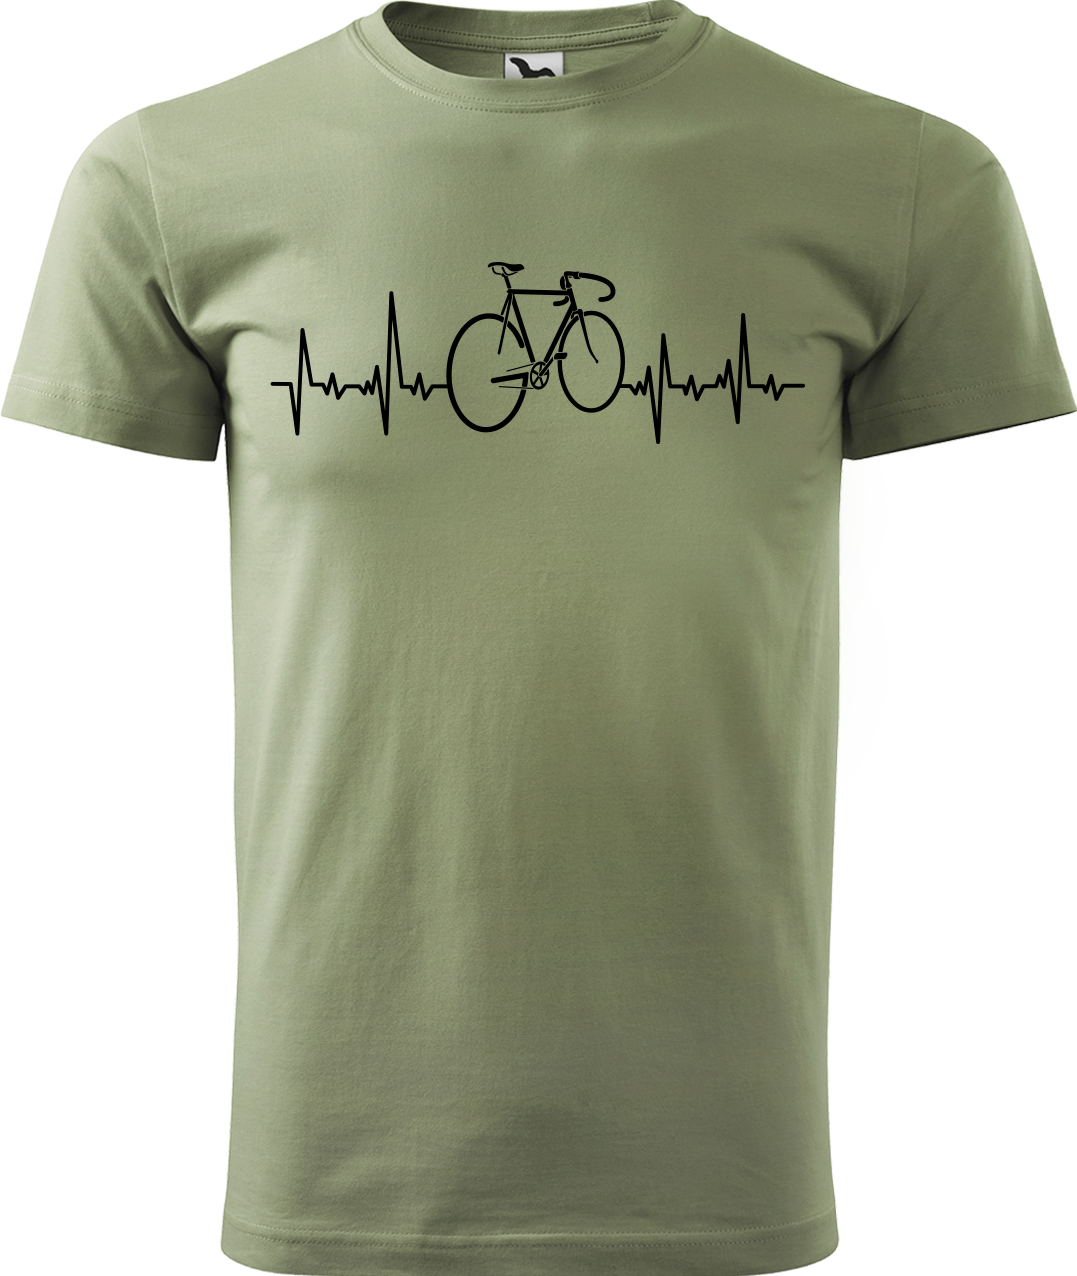 Pánské tričko s kolem - Cyklistův kardiogram Velikost: XL, Barva: Světlá khaki (28)